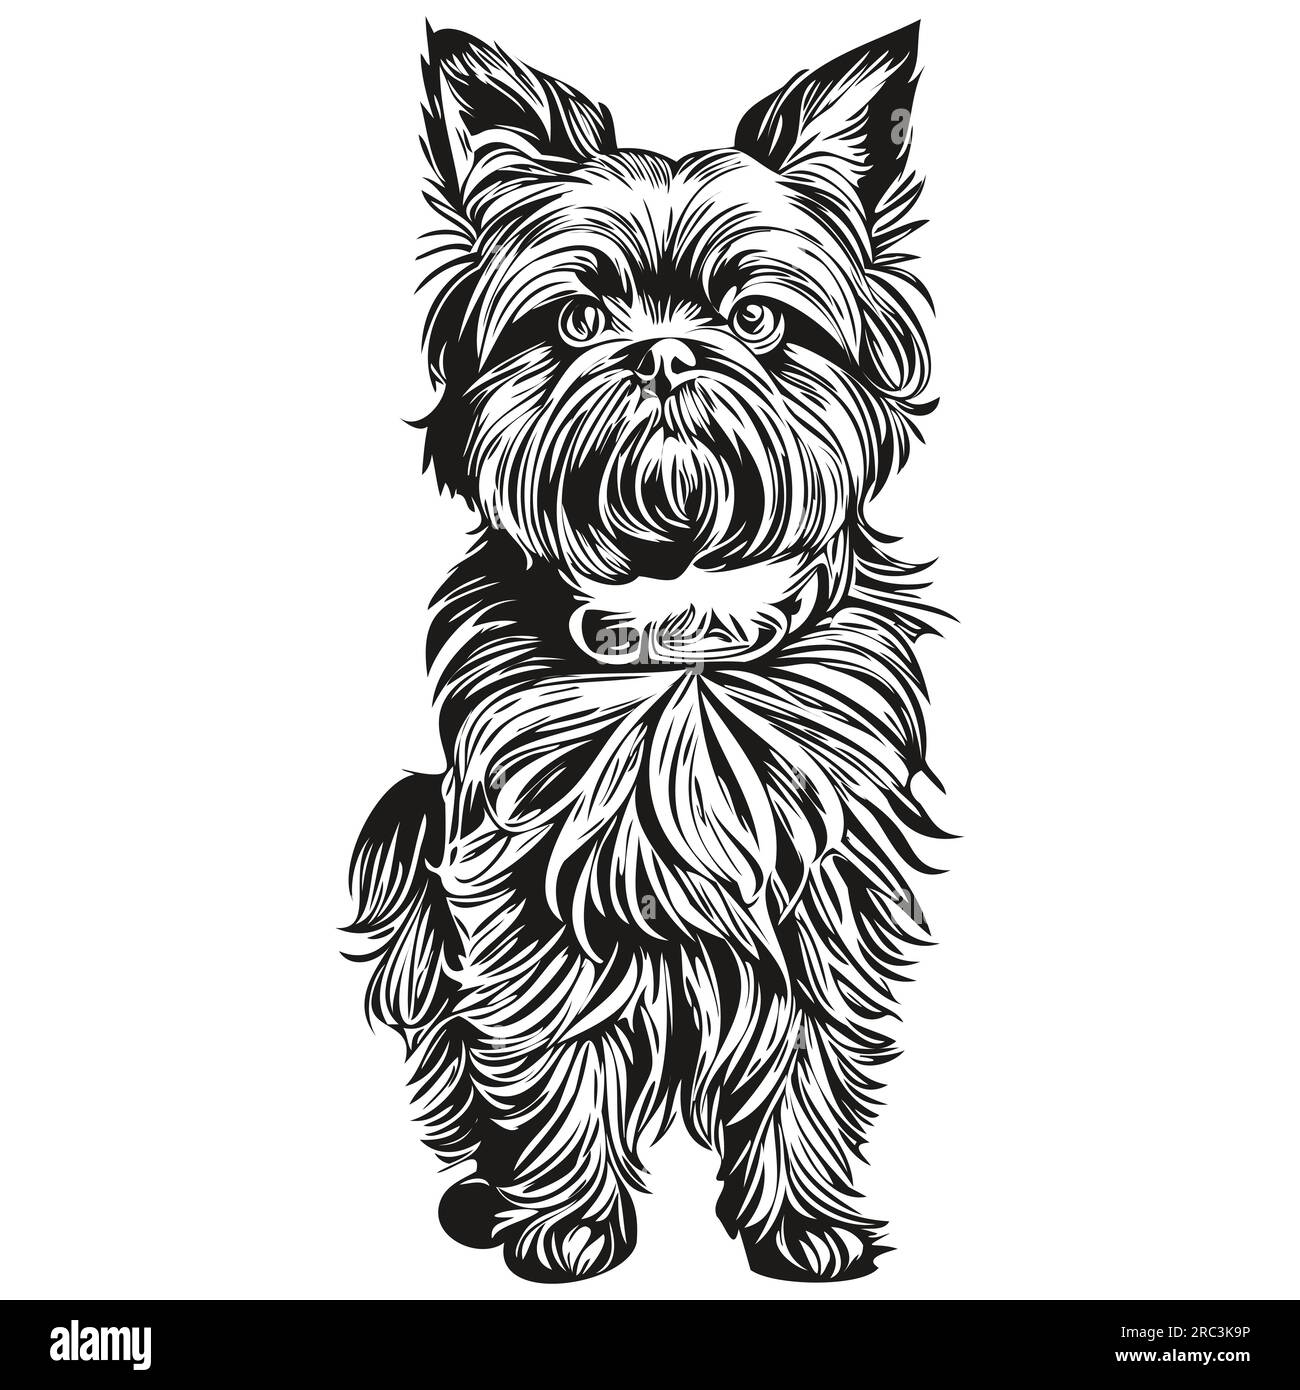 Affenpinscher chien dessin au crayon contour illustration, caractère noir sur fond blanc Illustration de Vecteur